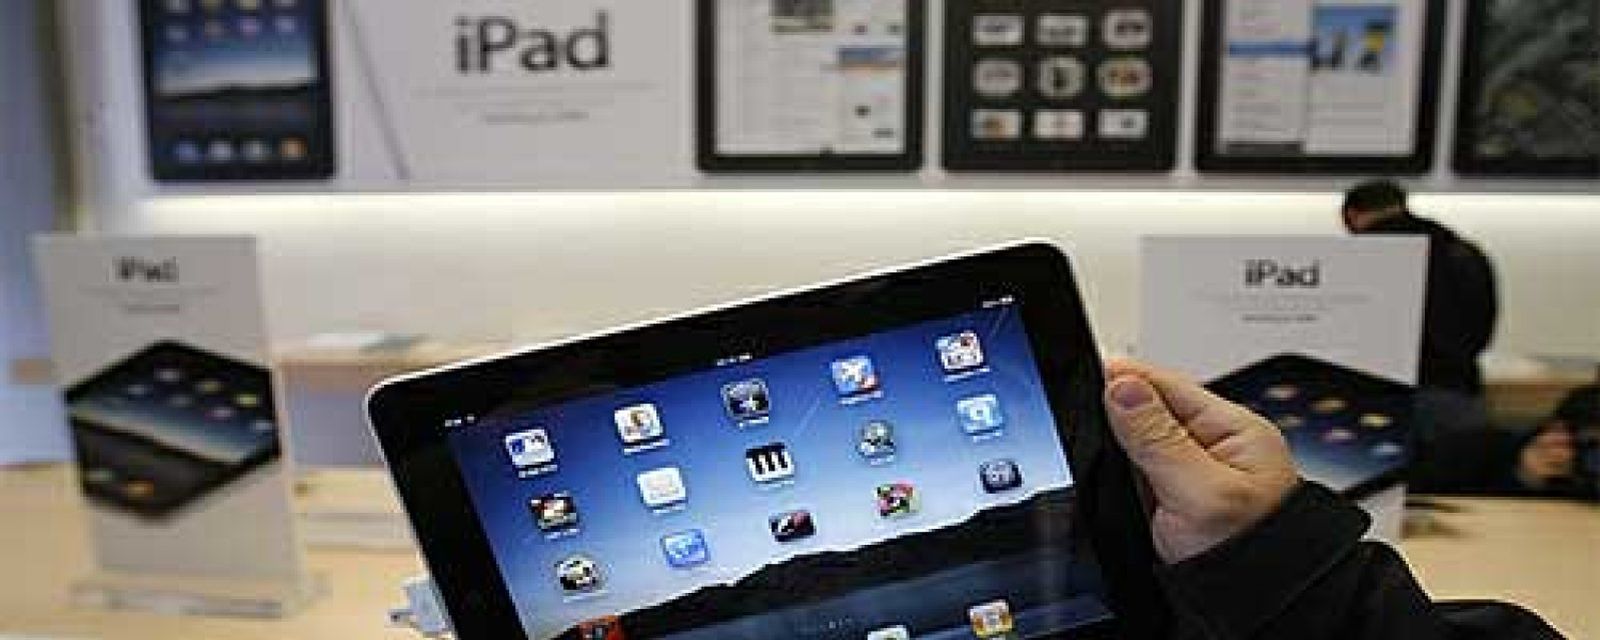 Foto: Apple paga a su rival Proview 60 millones de dólares por usar la marca 'iPad' en China